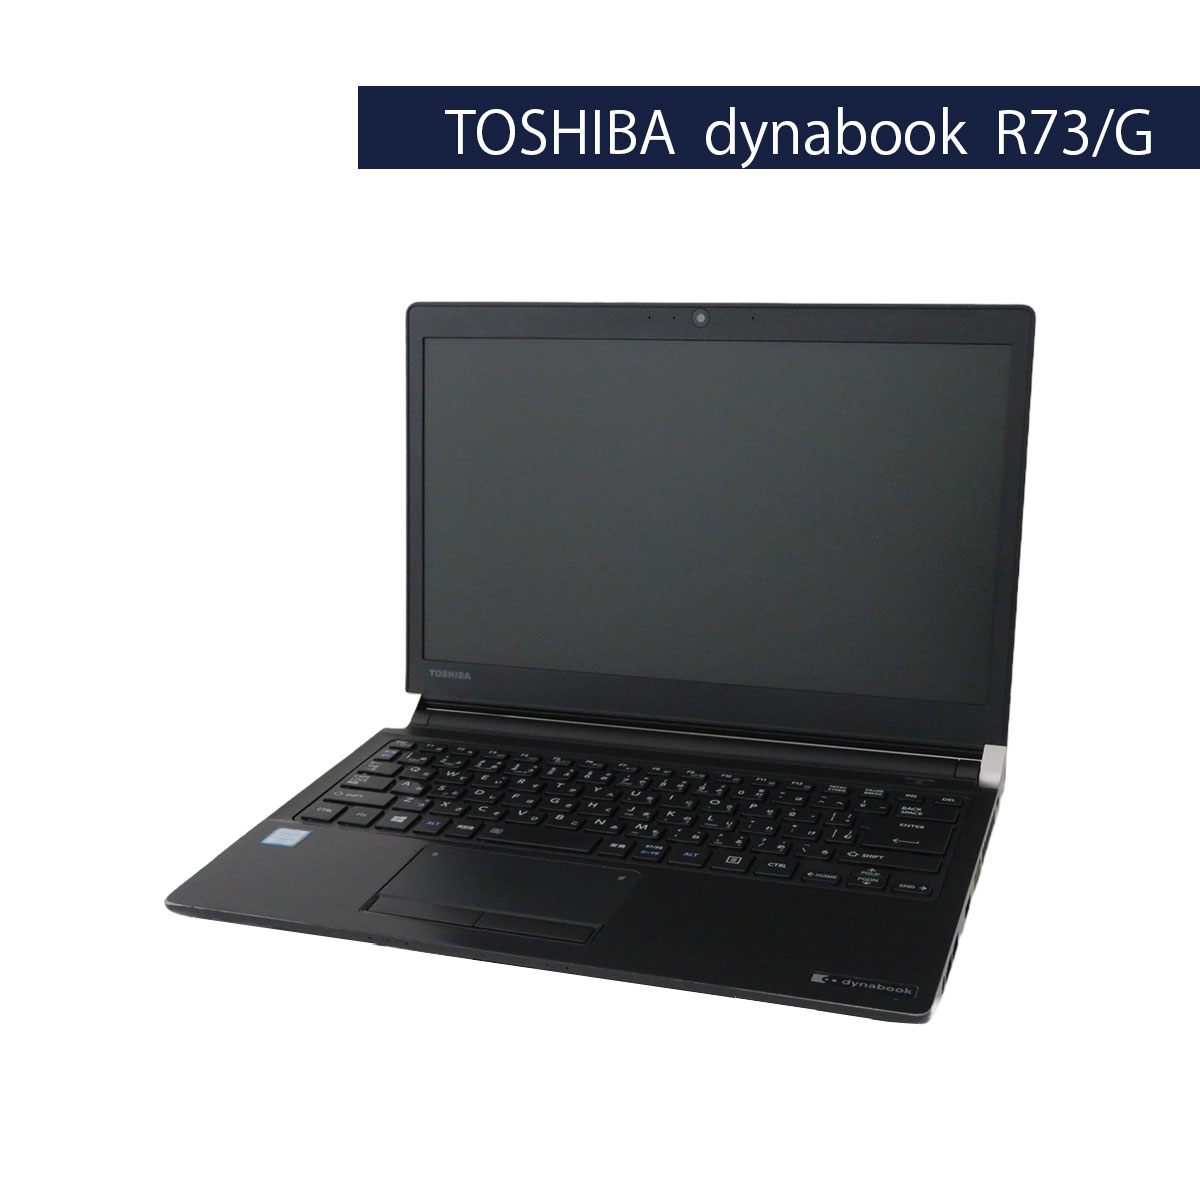 第6世代Corei5 SSD搭載 TOSHIBA dynabook R73/G Core i5 6200U Windows10 Pro 64Bit